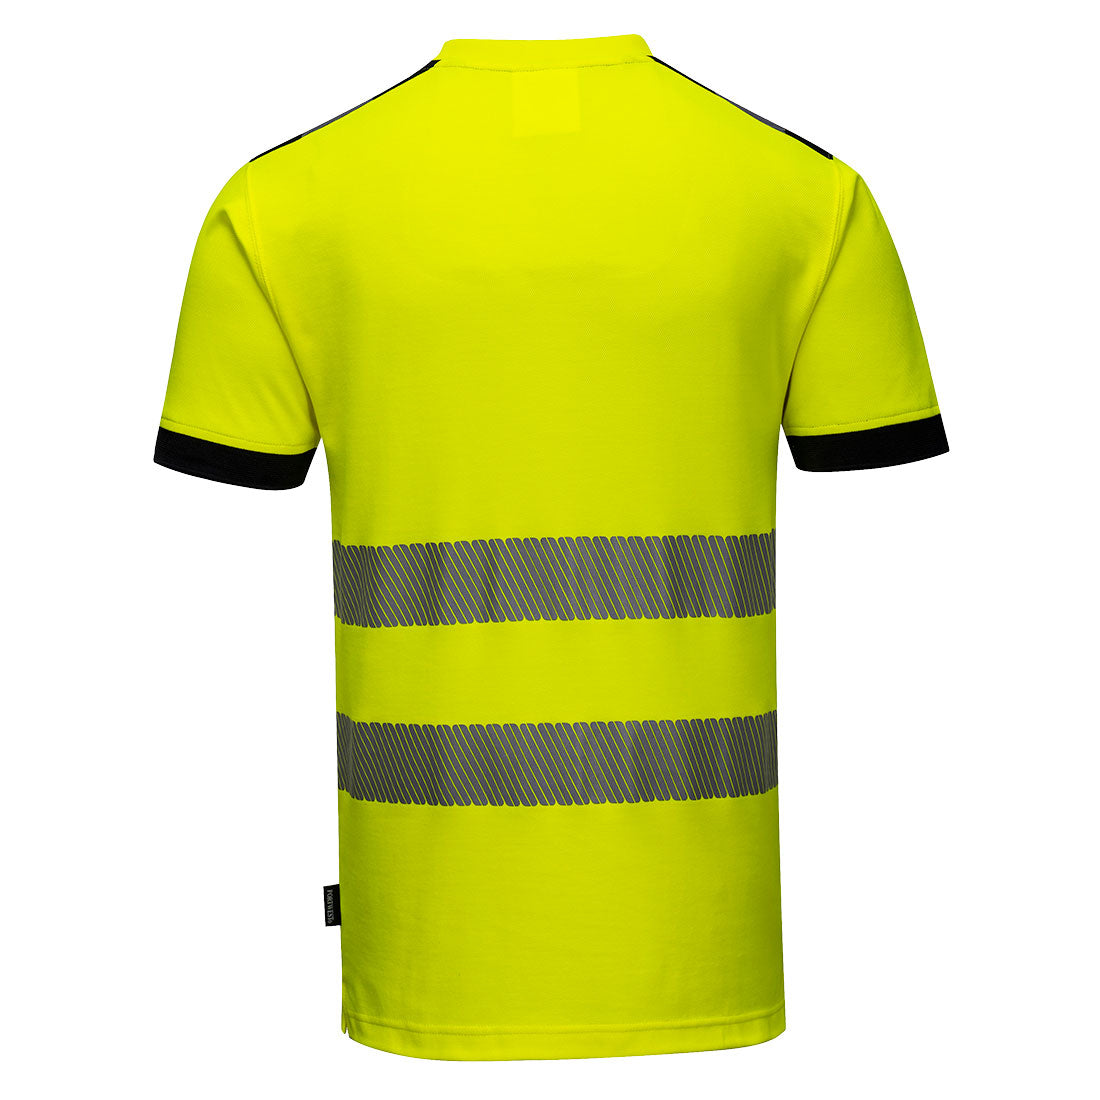 Portwest Workwear T181 PW3 Yellow Hi-Viz T-Shirt S/XXL